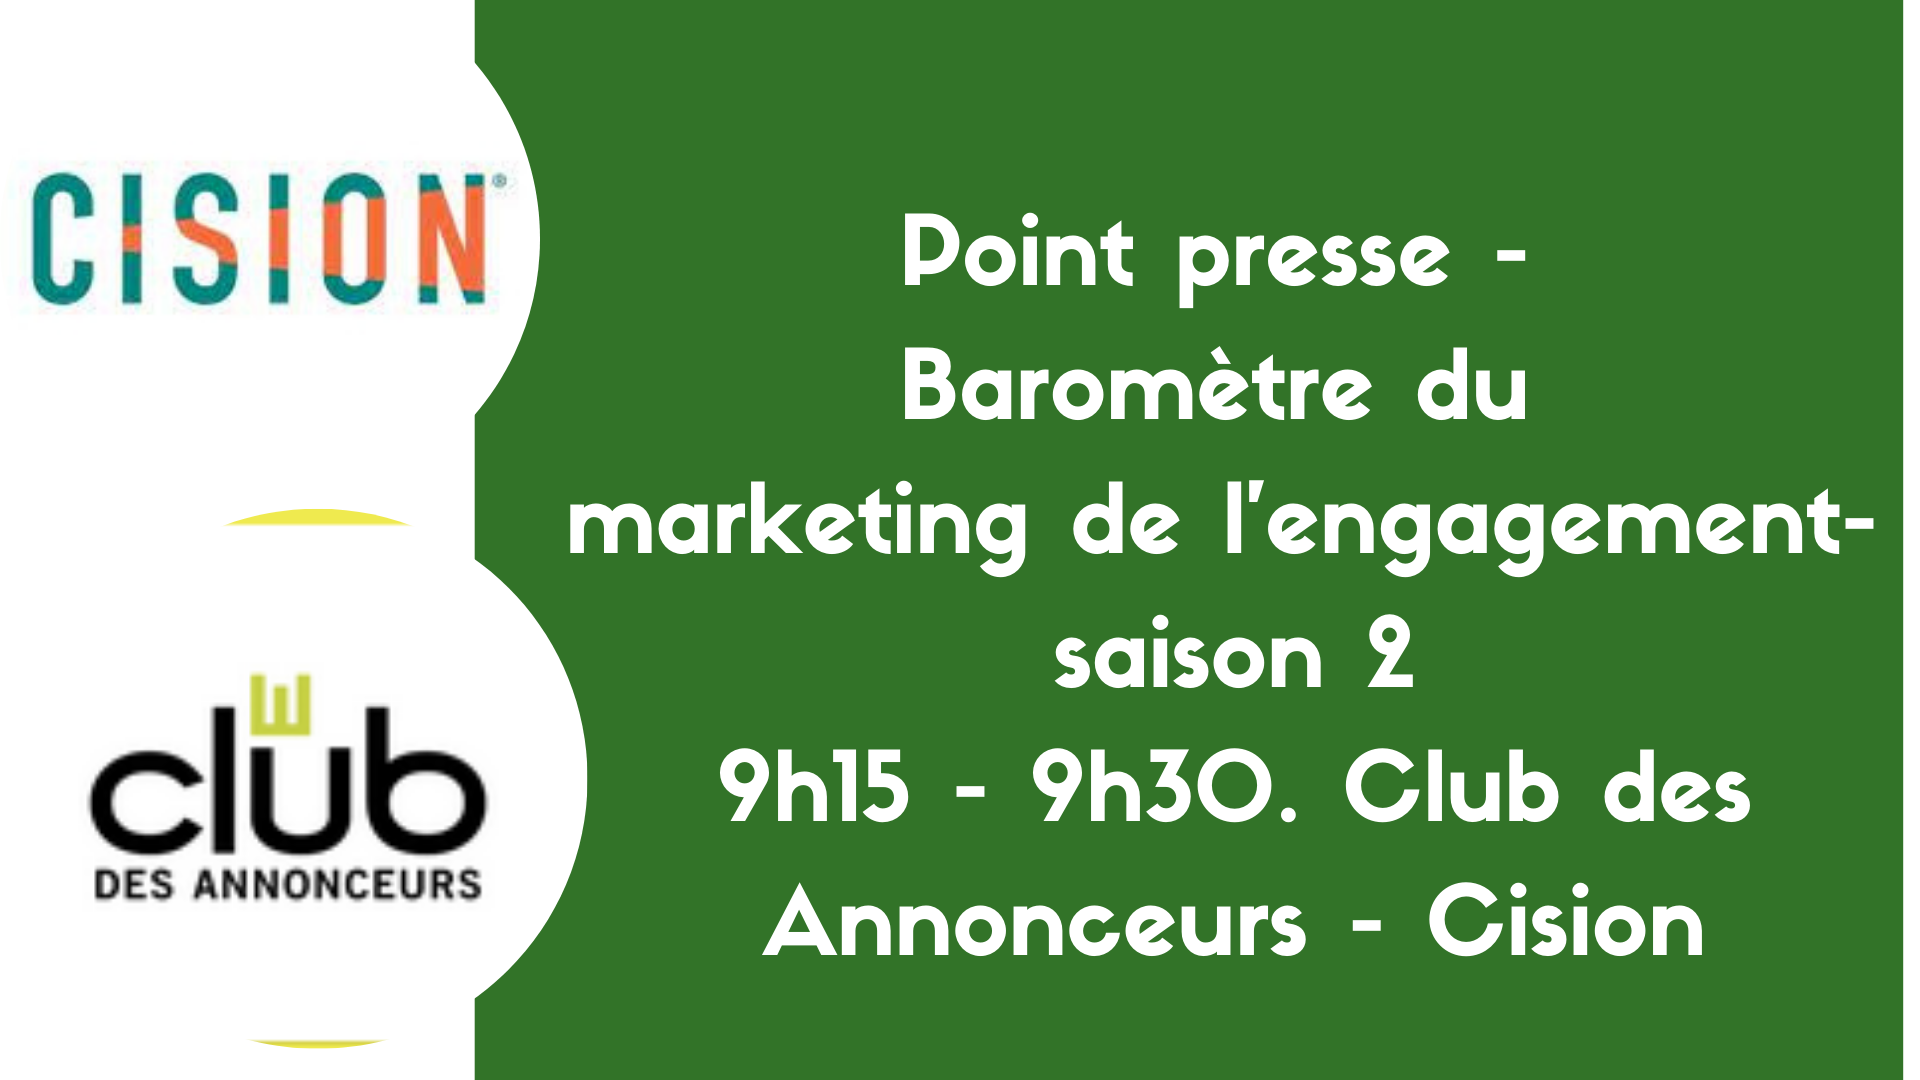 Point presse : Baromètre du marketing de l'engagement mardi 30 mars, 9h15 - 9h30. Club des Annonceurs - Cision